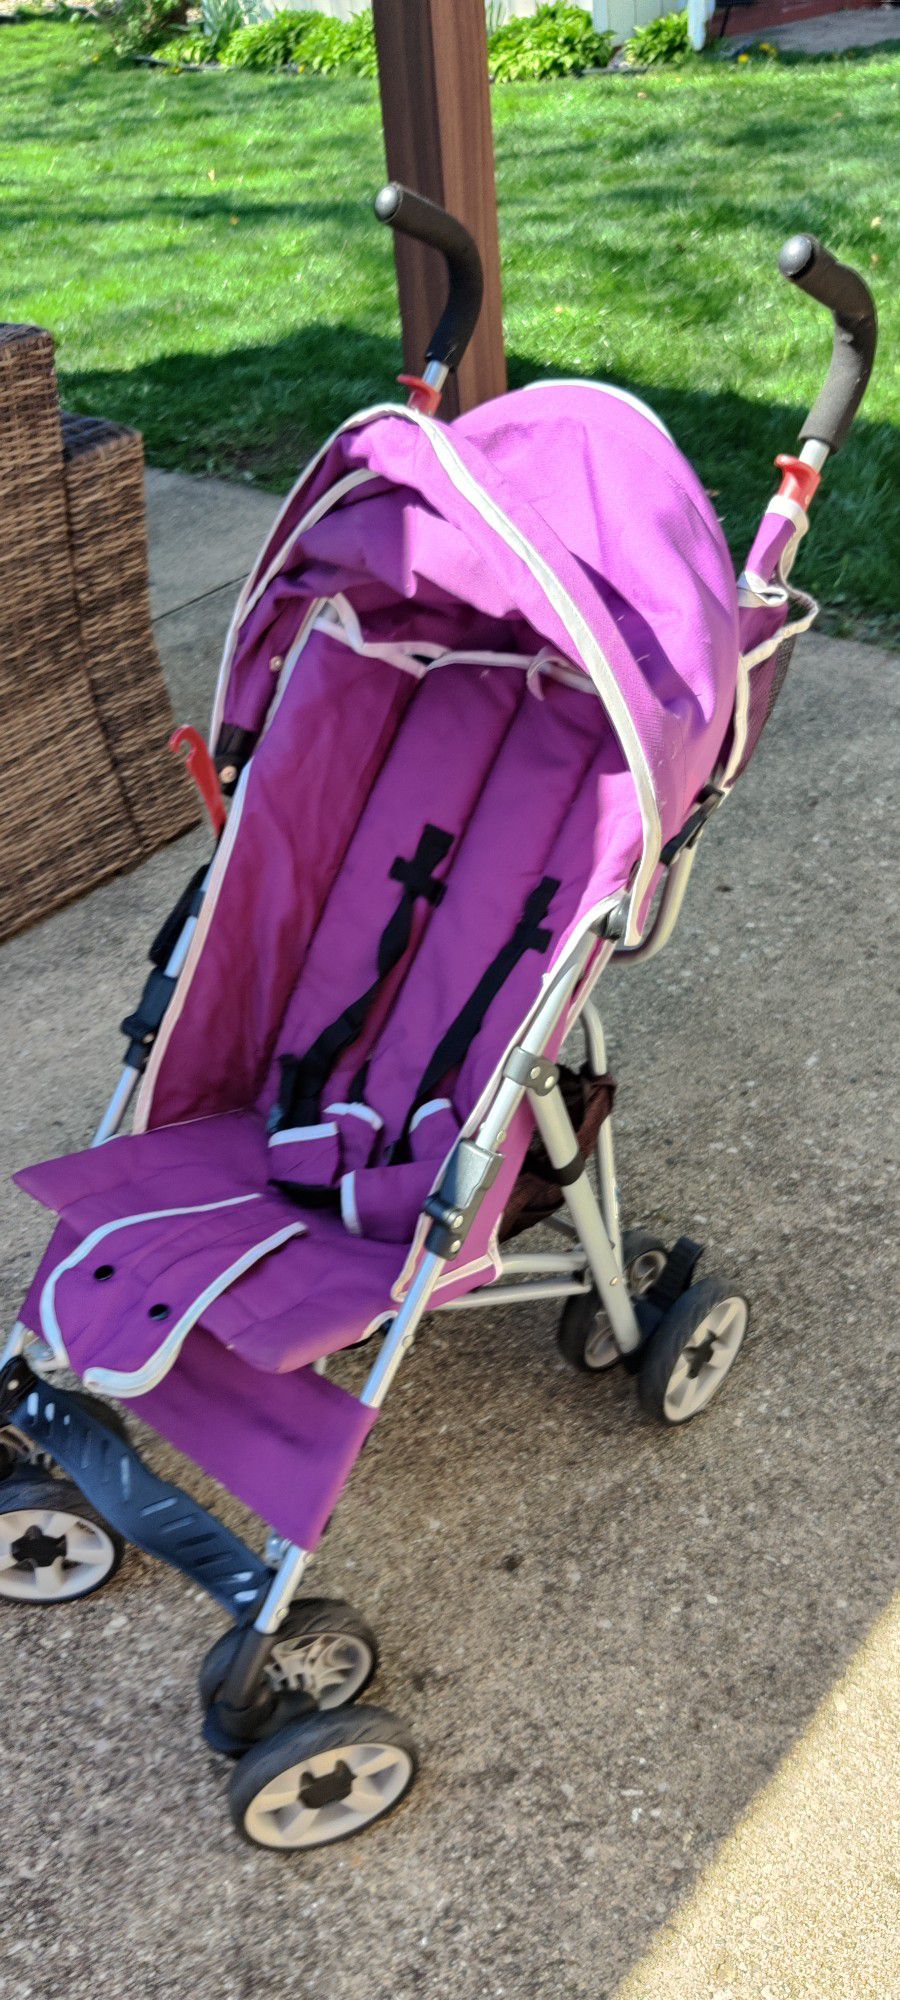 Babies R Us Deluxe Umbrella Stroller
$20